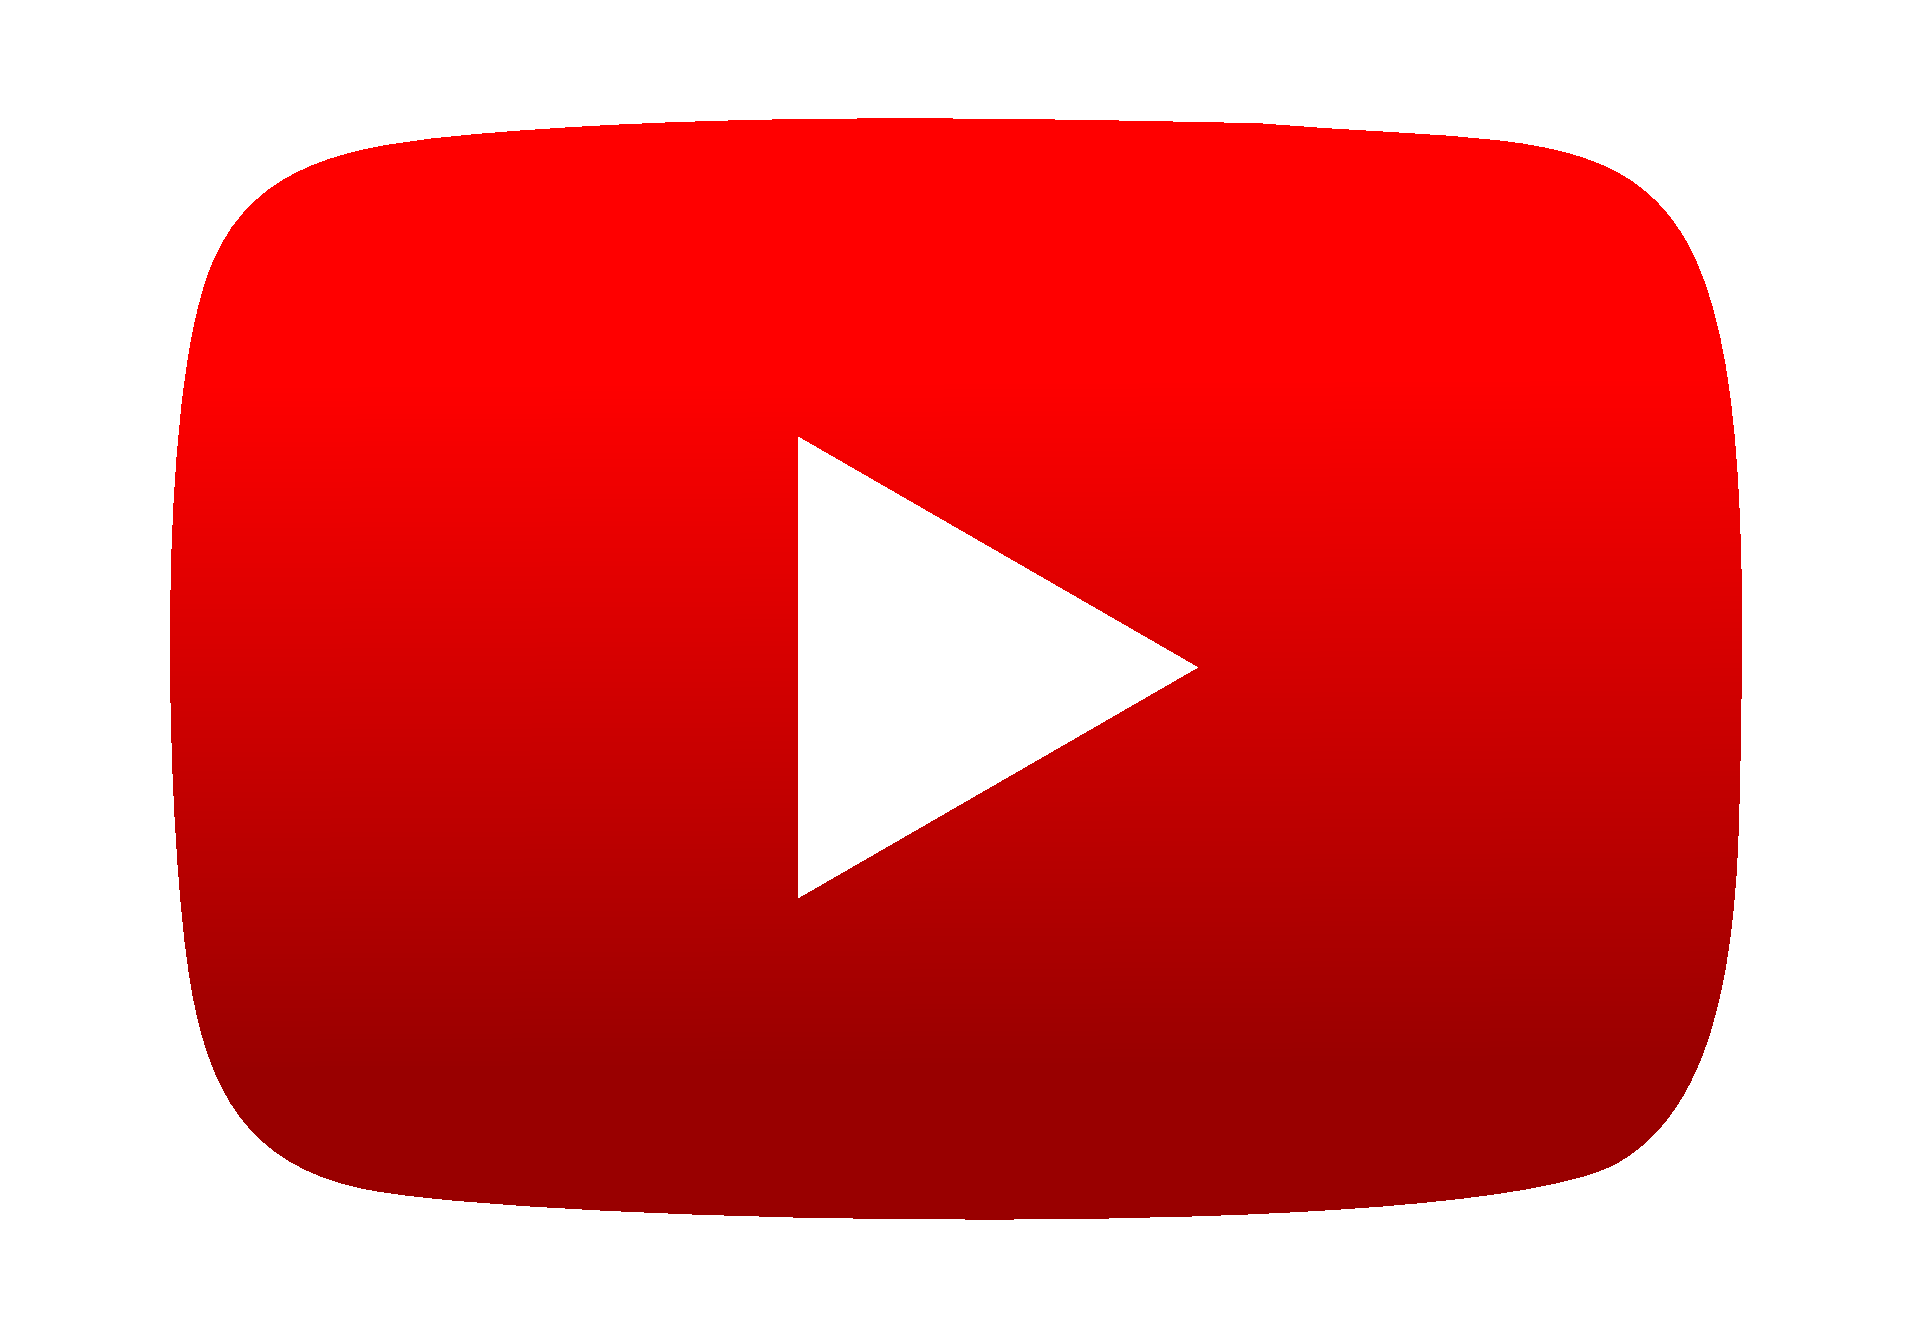 logotipo youtube